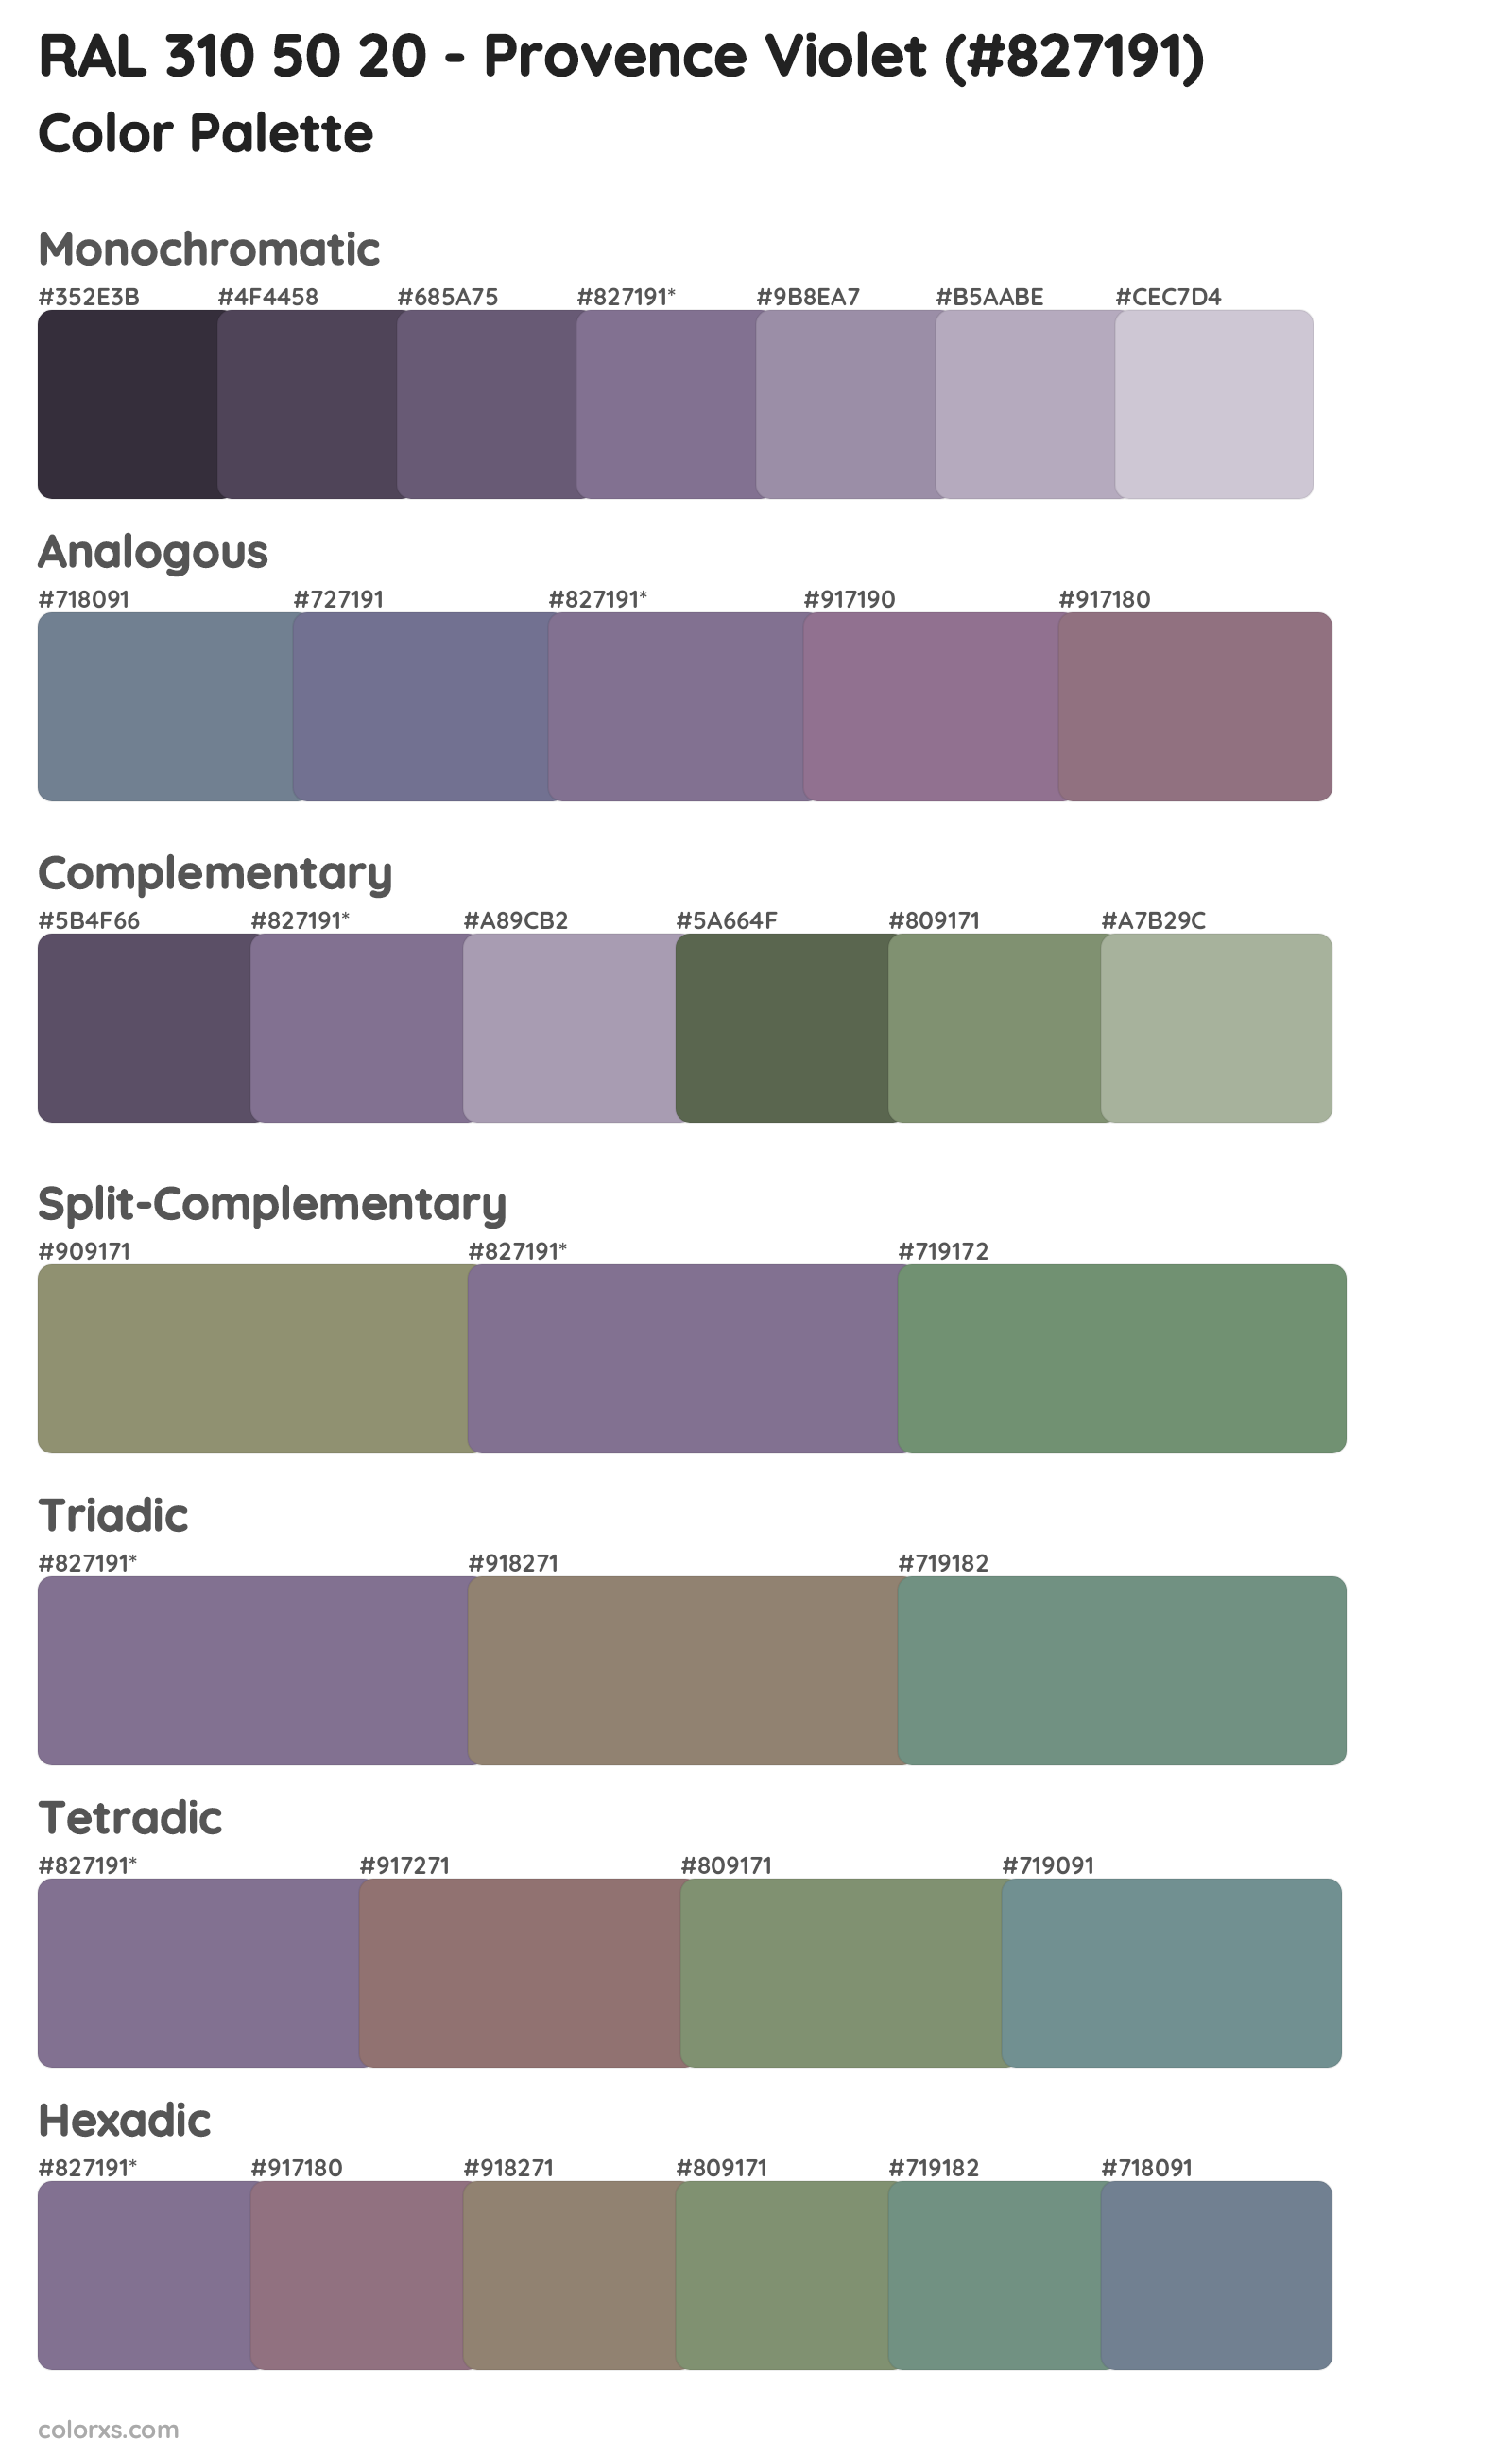 RAL 310 50 20 - Provence Violet Color Scheme Palettes